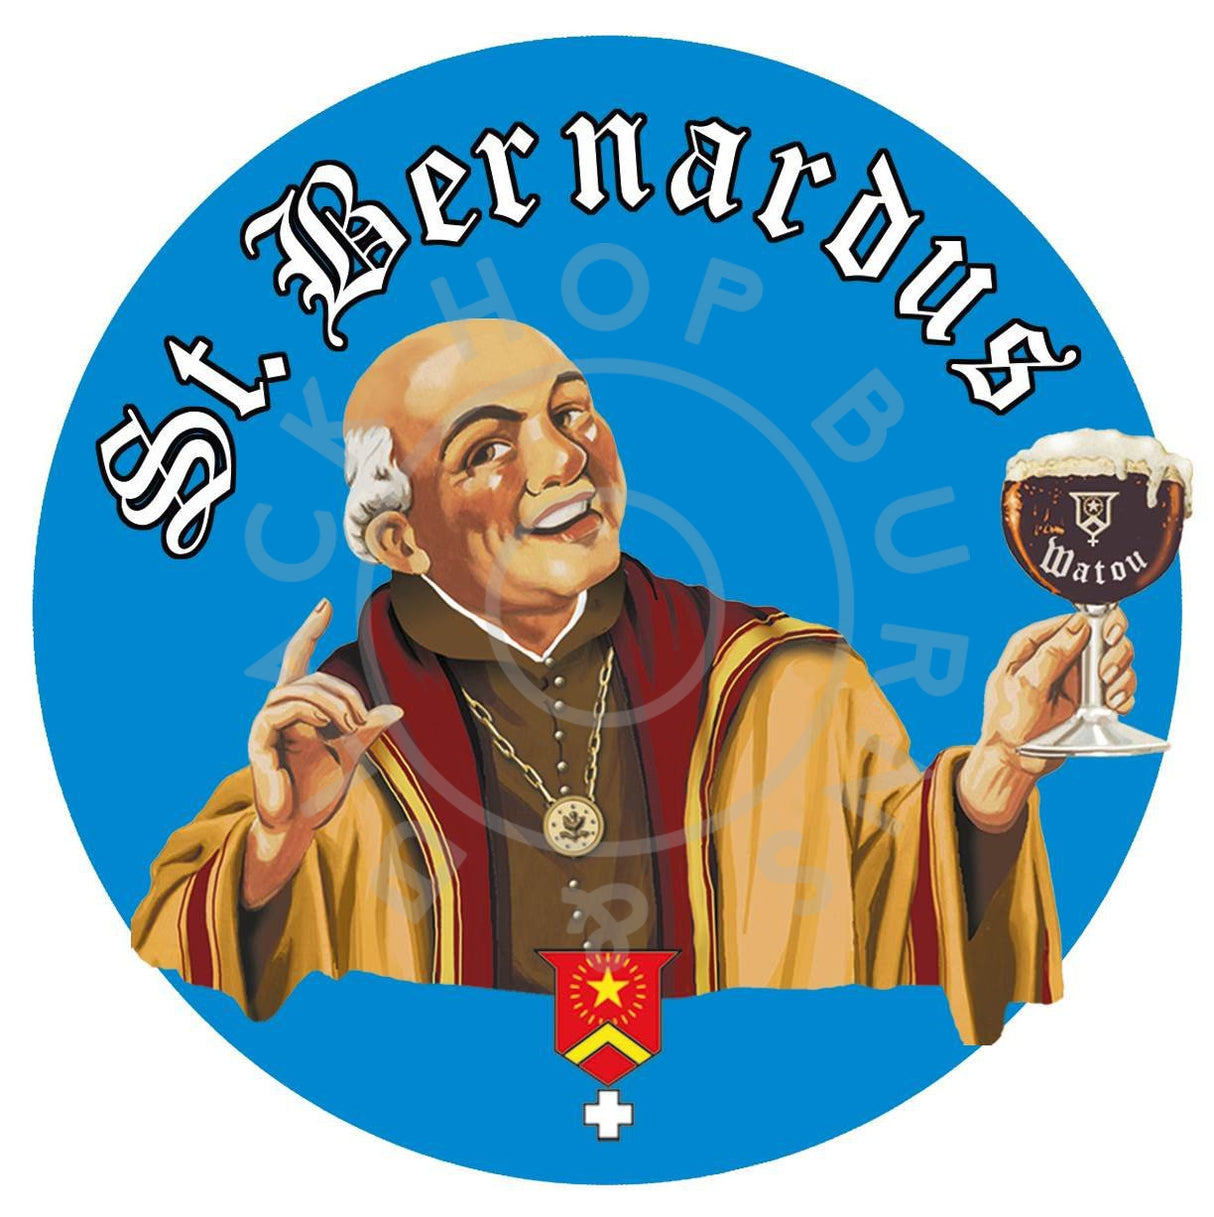 St Bernardus Pater 6 Dubbel 6.7% (330ml)-Hop Burns & Black